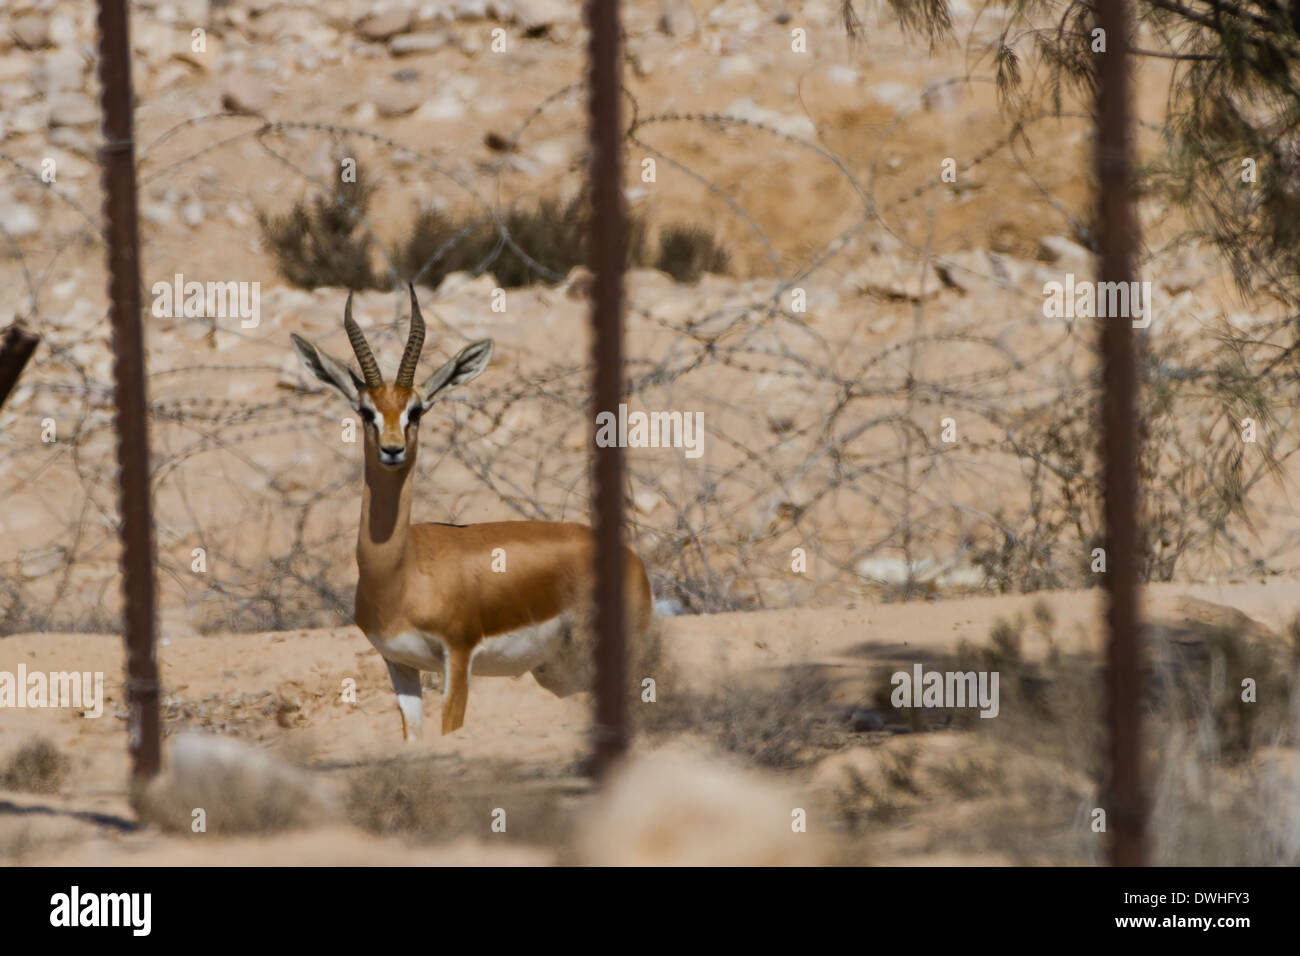 Derrière une clôture en Gazelle zone militaire. Néguev, Israël. Zones militaires fermées sont devenus un refuge pour la faune Banque D'Images